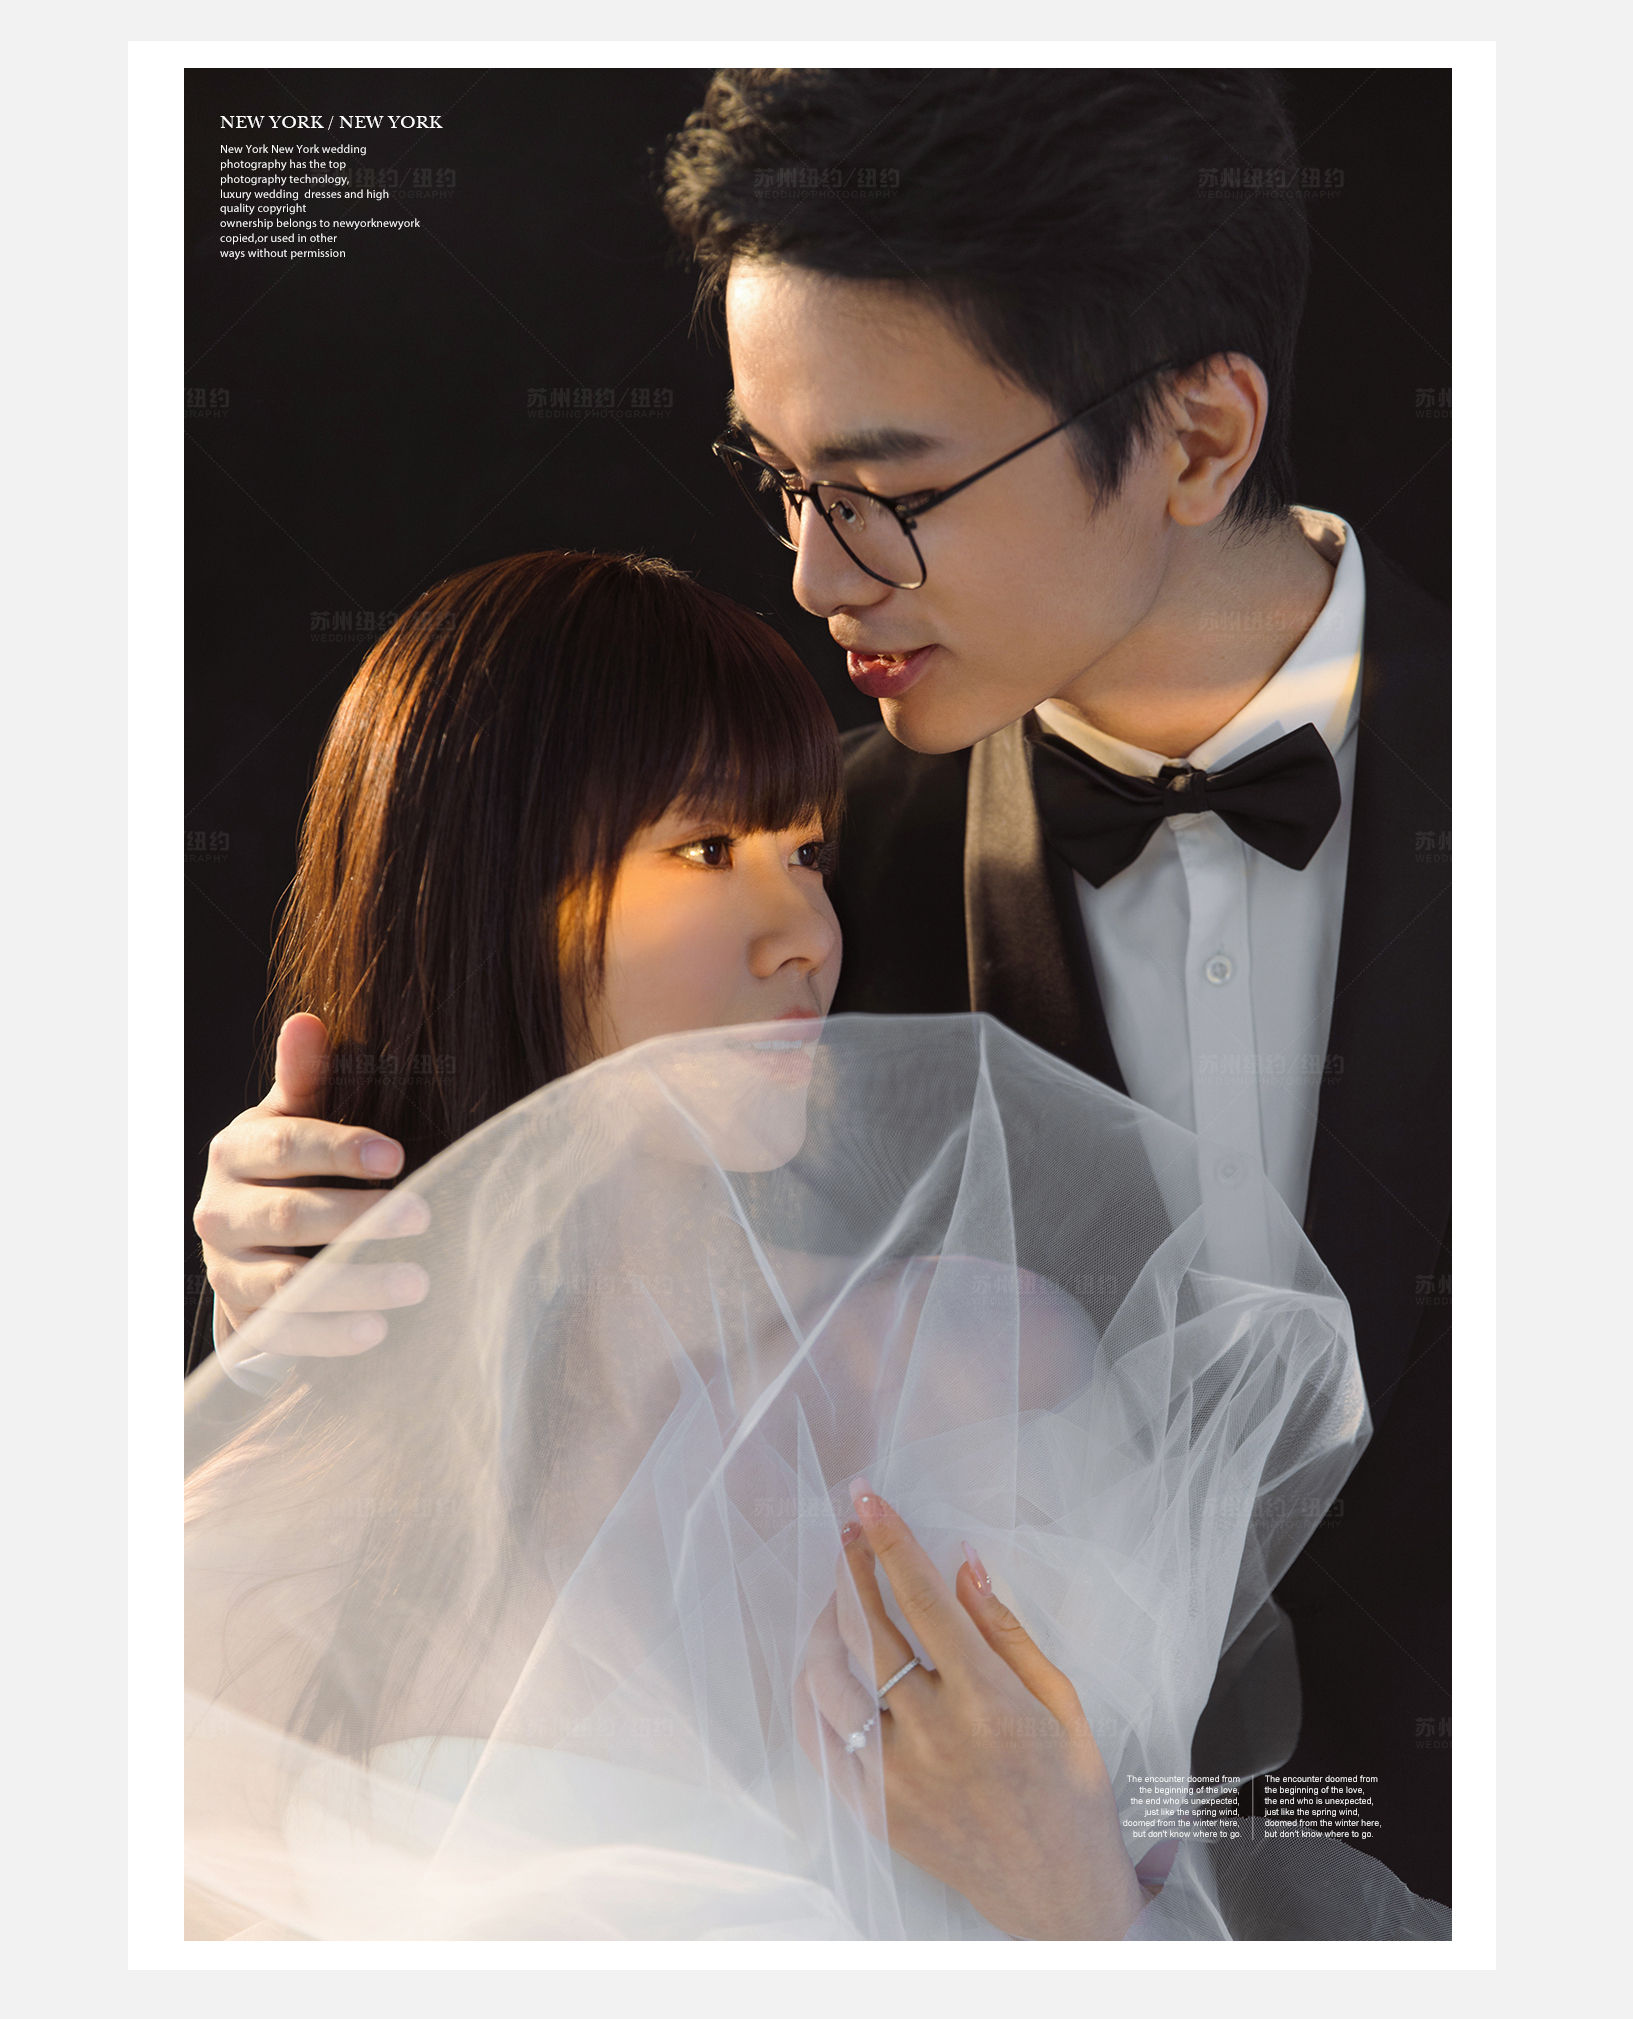 Mr.徐 & Ms.张（纽约纽约最新客照）婚纱摄影照